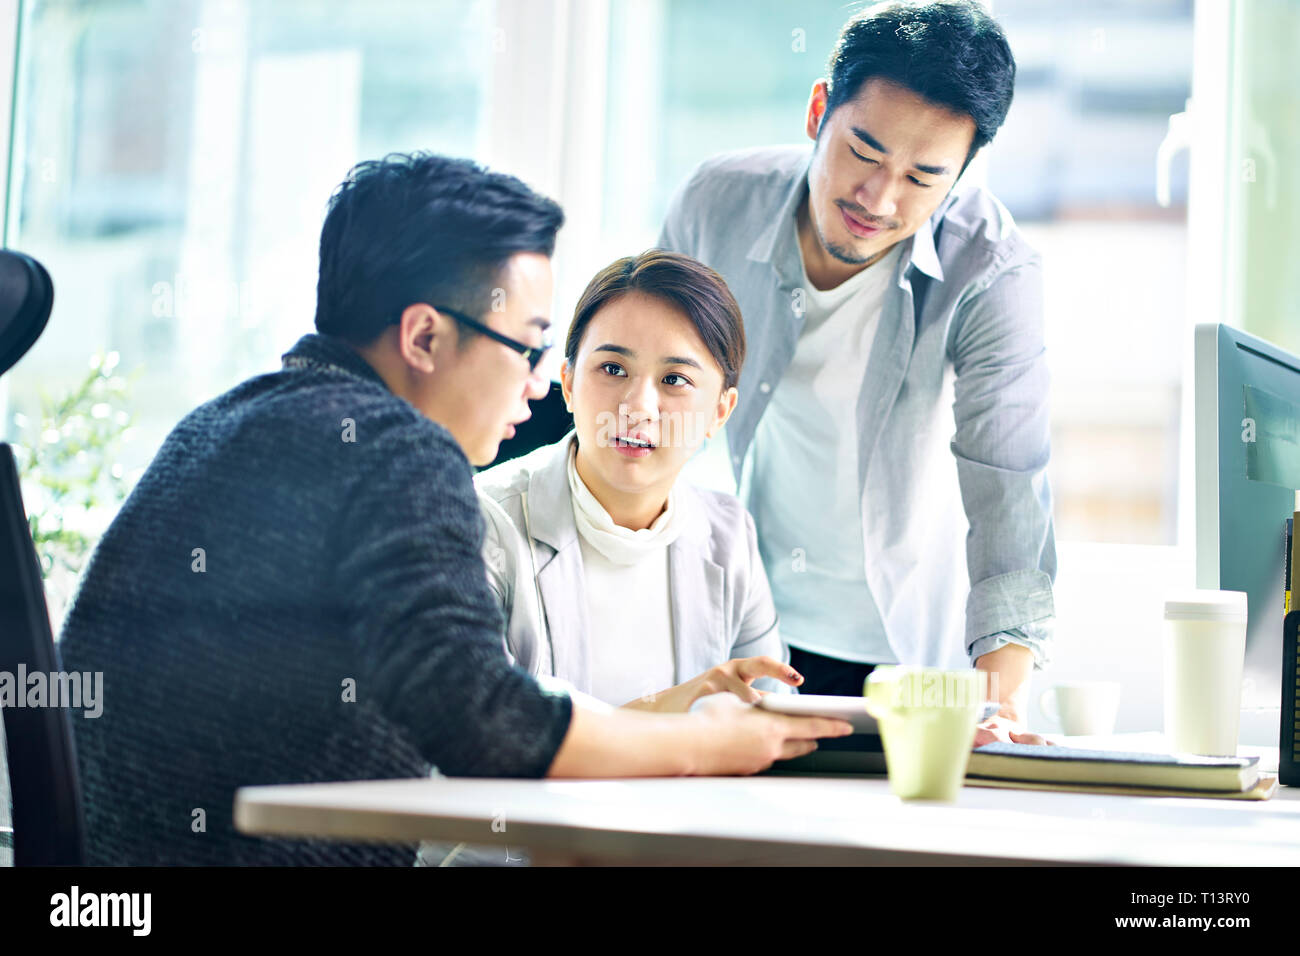 Trois jeunes dirigeants de sociétés asiatiques meeting in office discuter affaires using digital tablet. Banque D'Images